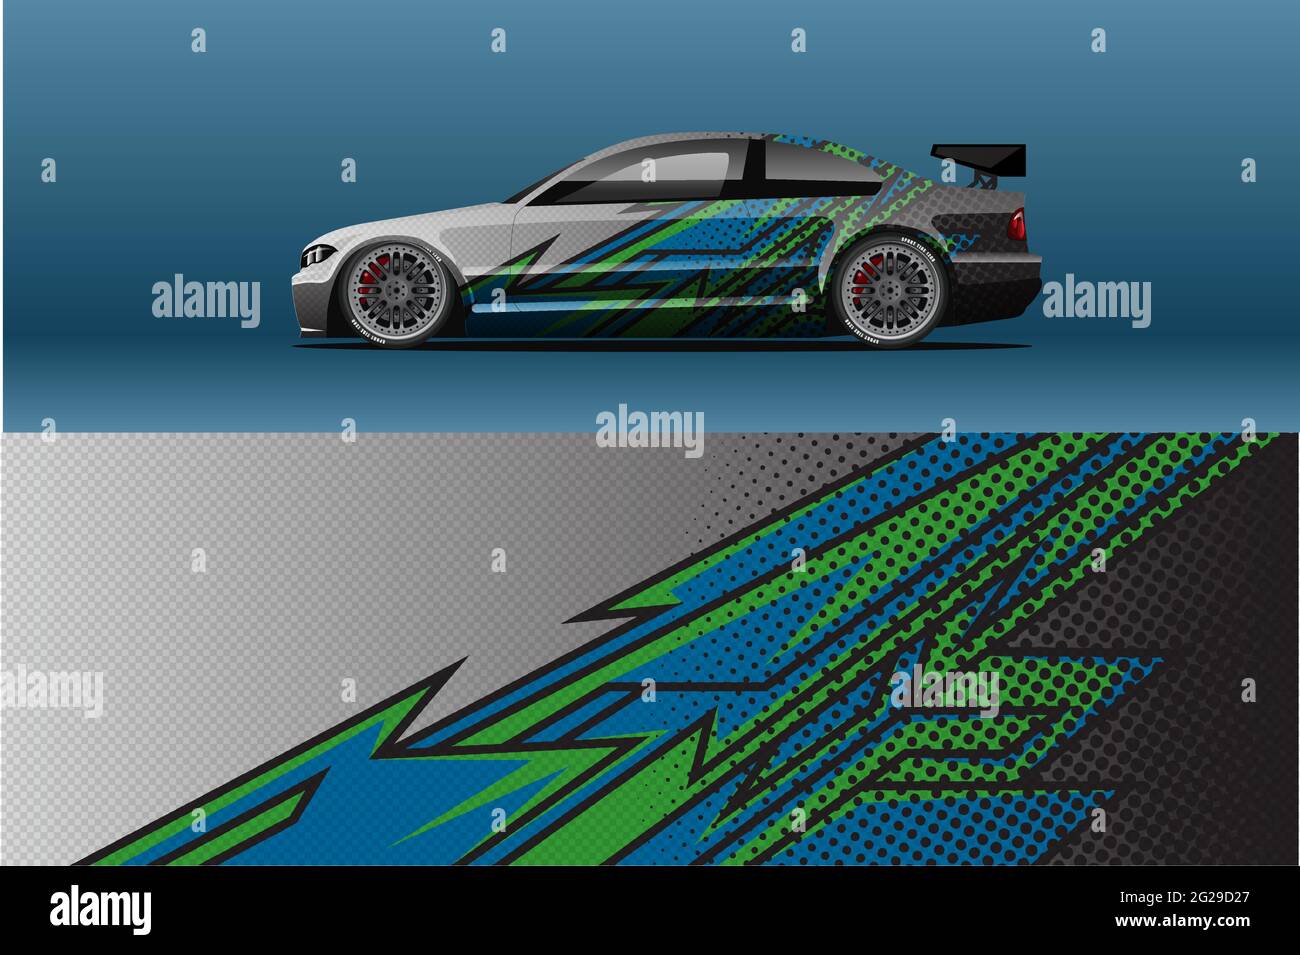 Racing sport helm wrap aufkleber und vinyl-aufkleber-design für